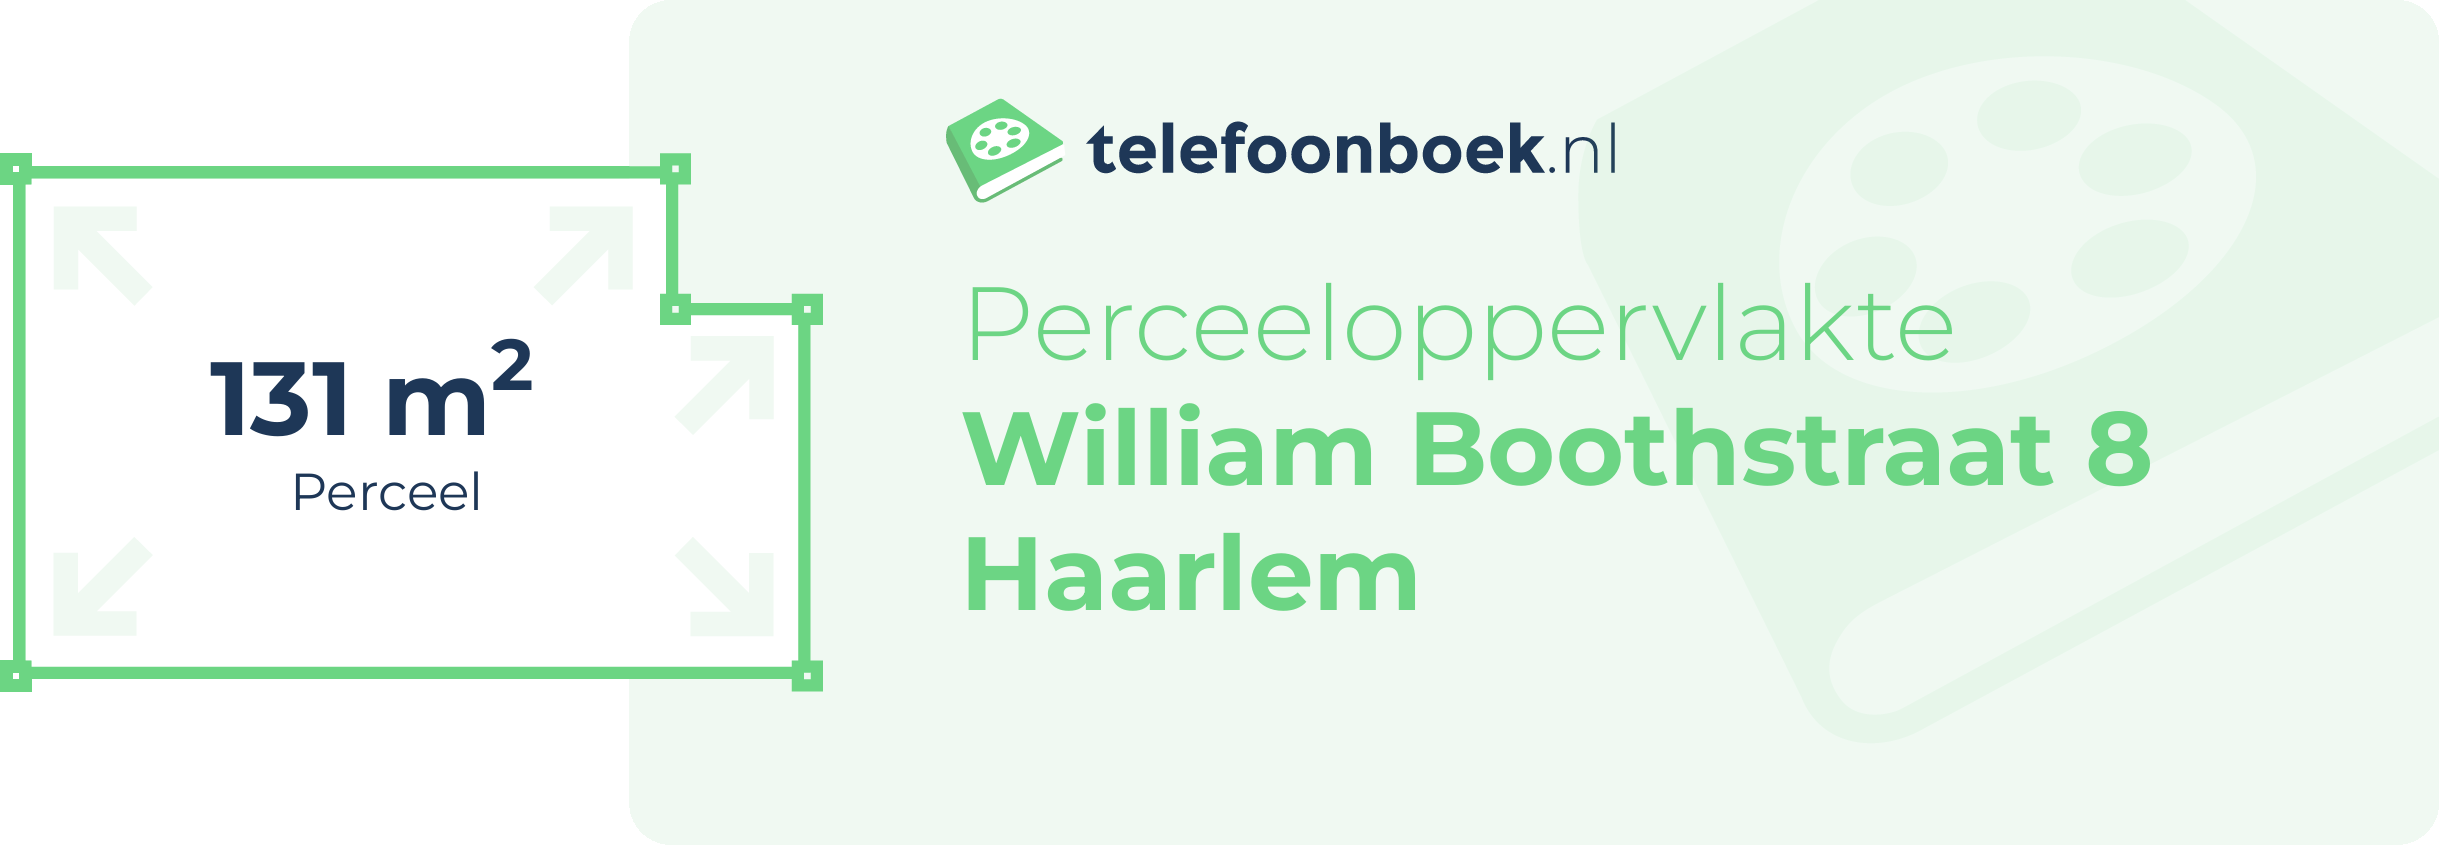 Perceeloppervlakte William Boothstraat 8 Haarlem